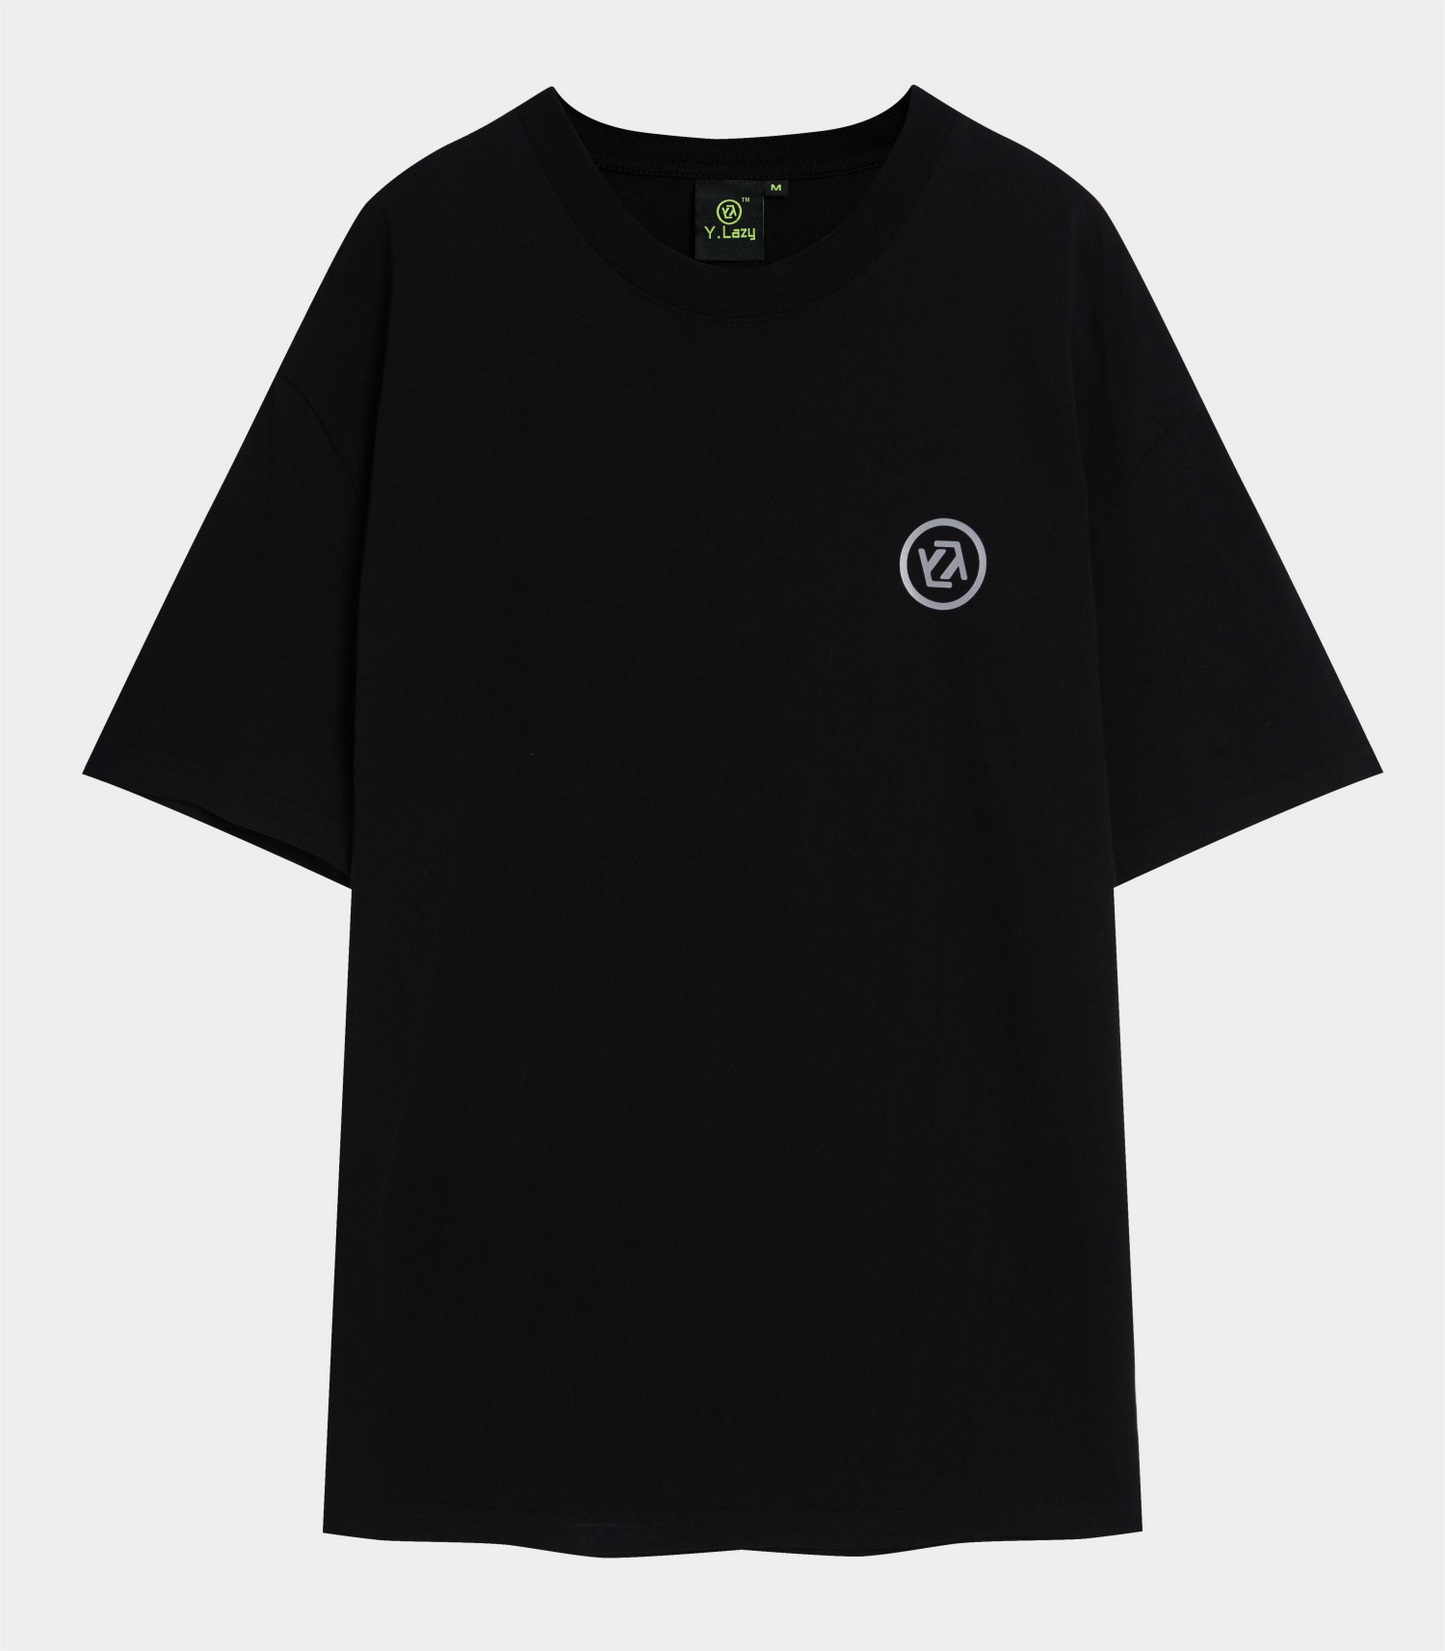 Y.Lazy Logo Style Fashion T-Shirt Black